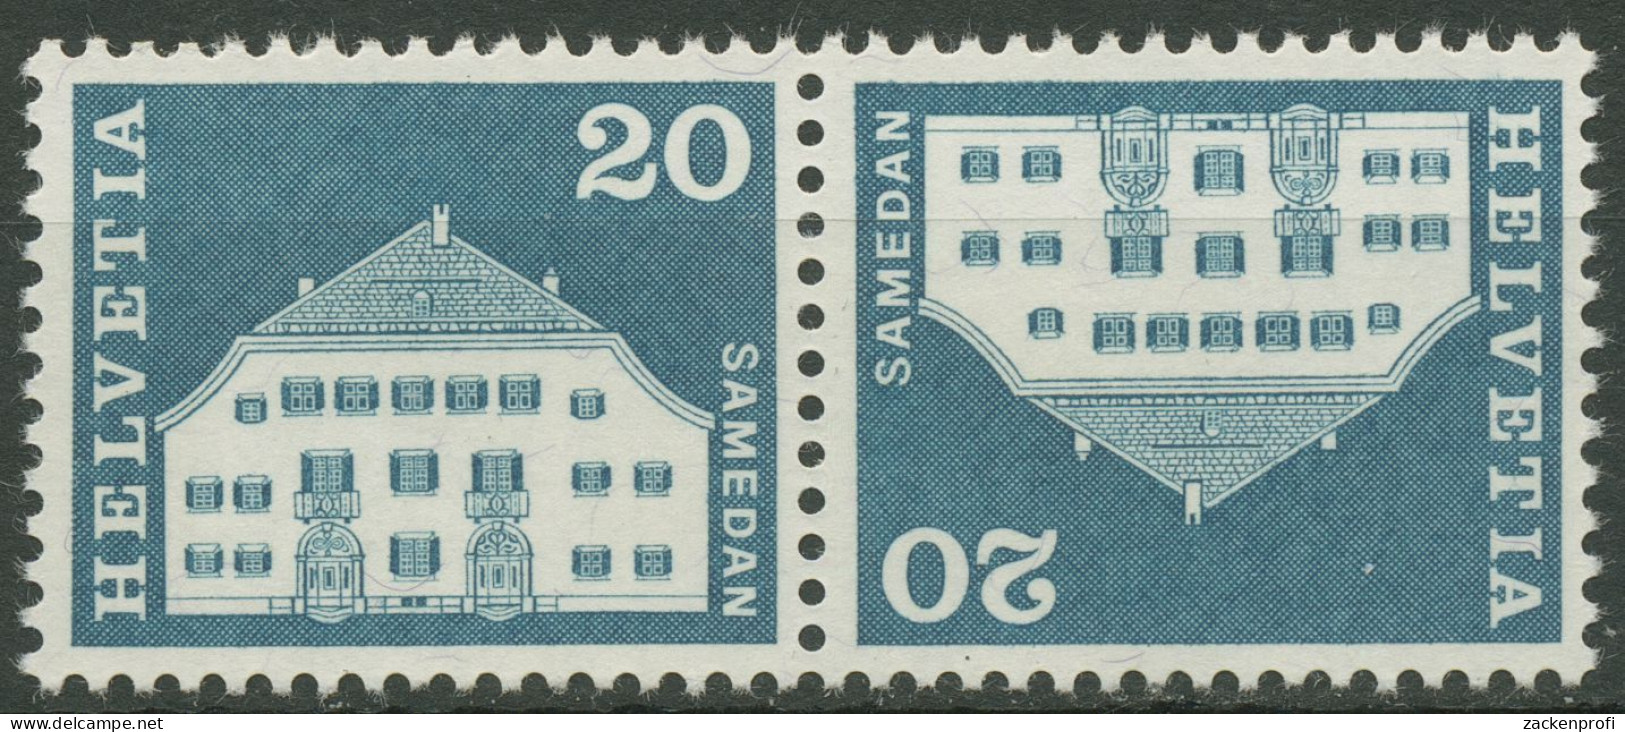 Schweiz 1968 Bauwerke Planta-Haus Samedan 881 Kehrdruck K 51 Postfrisch - Neufs